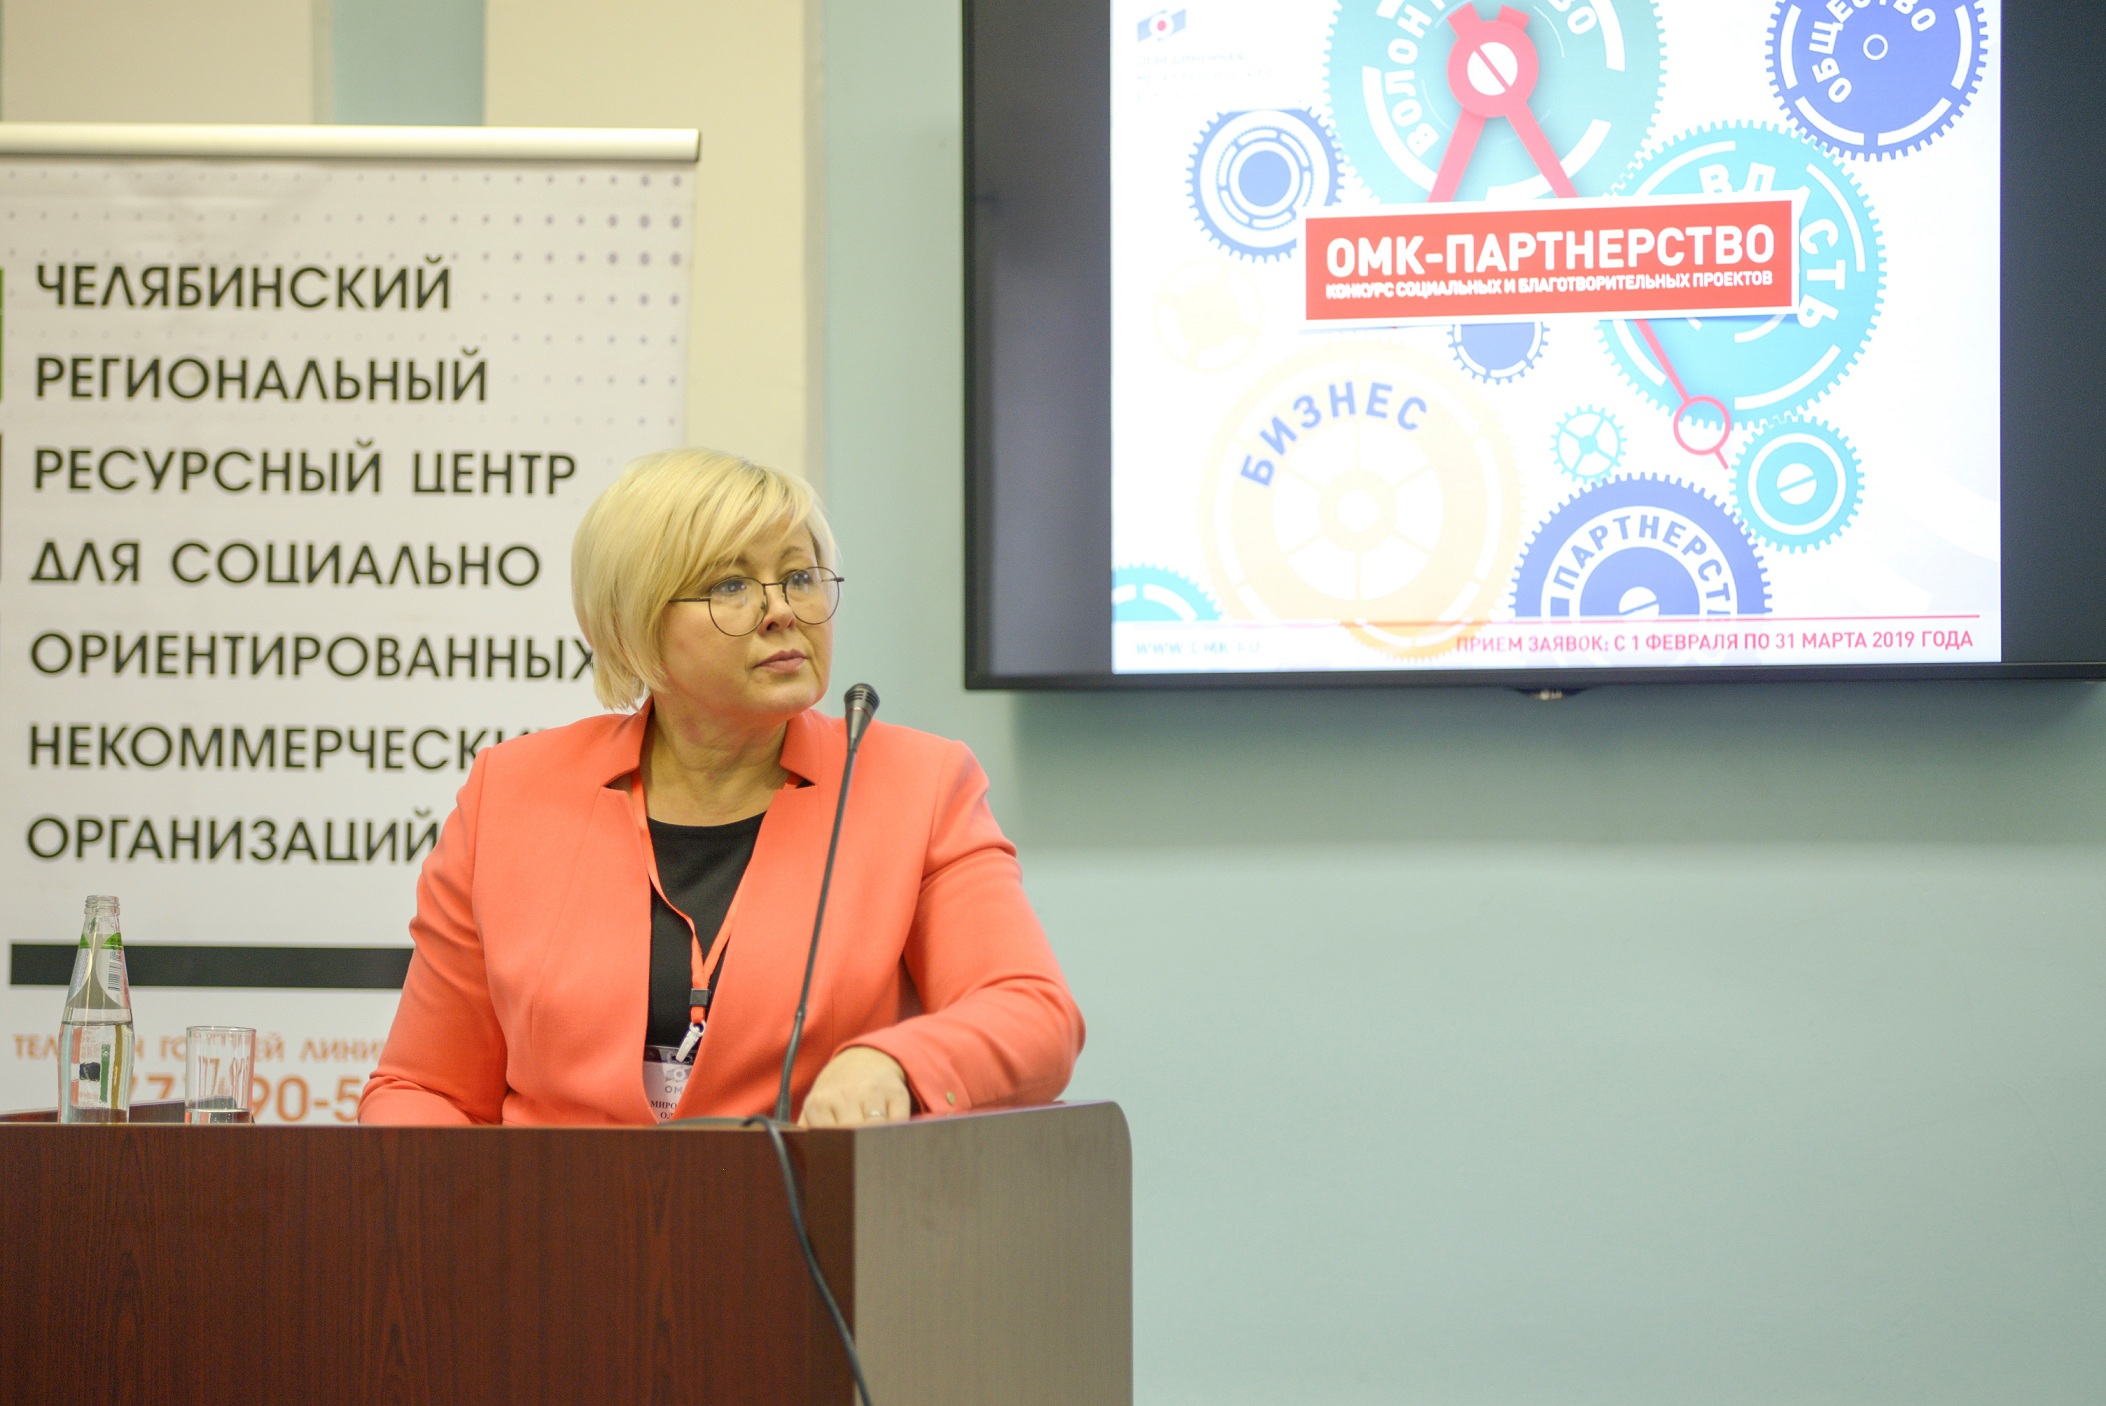 ОМК направит 2 млн рублей на реализацию социальных и благотворительных проектов в Челябинской области